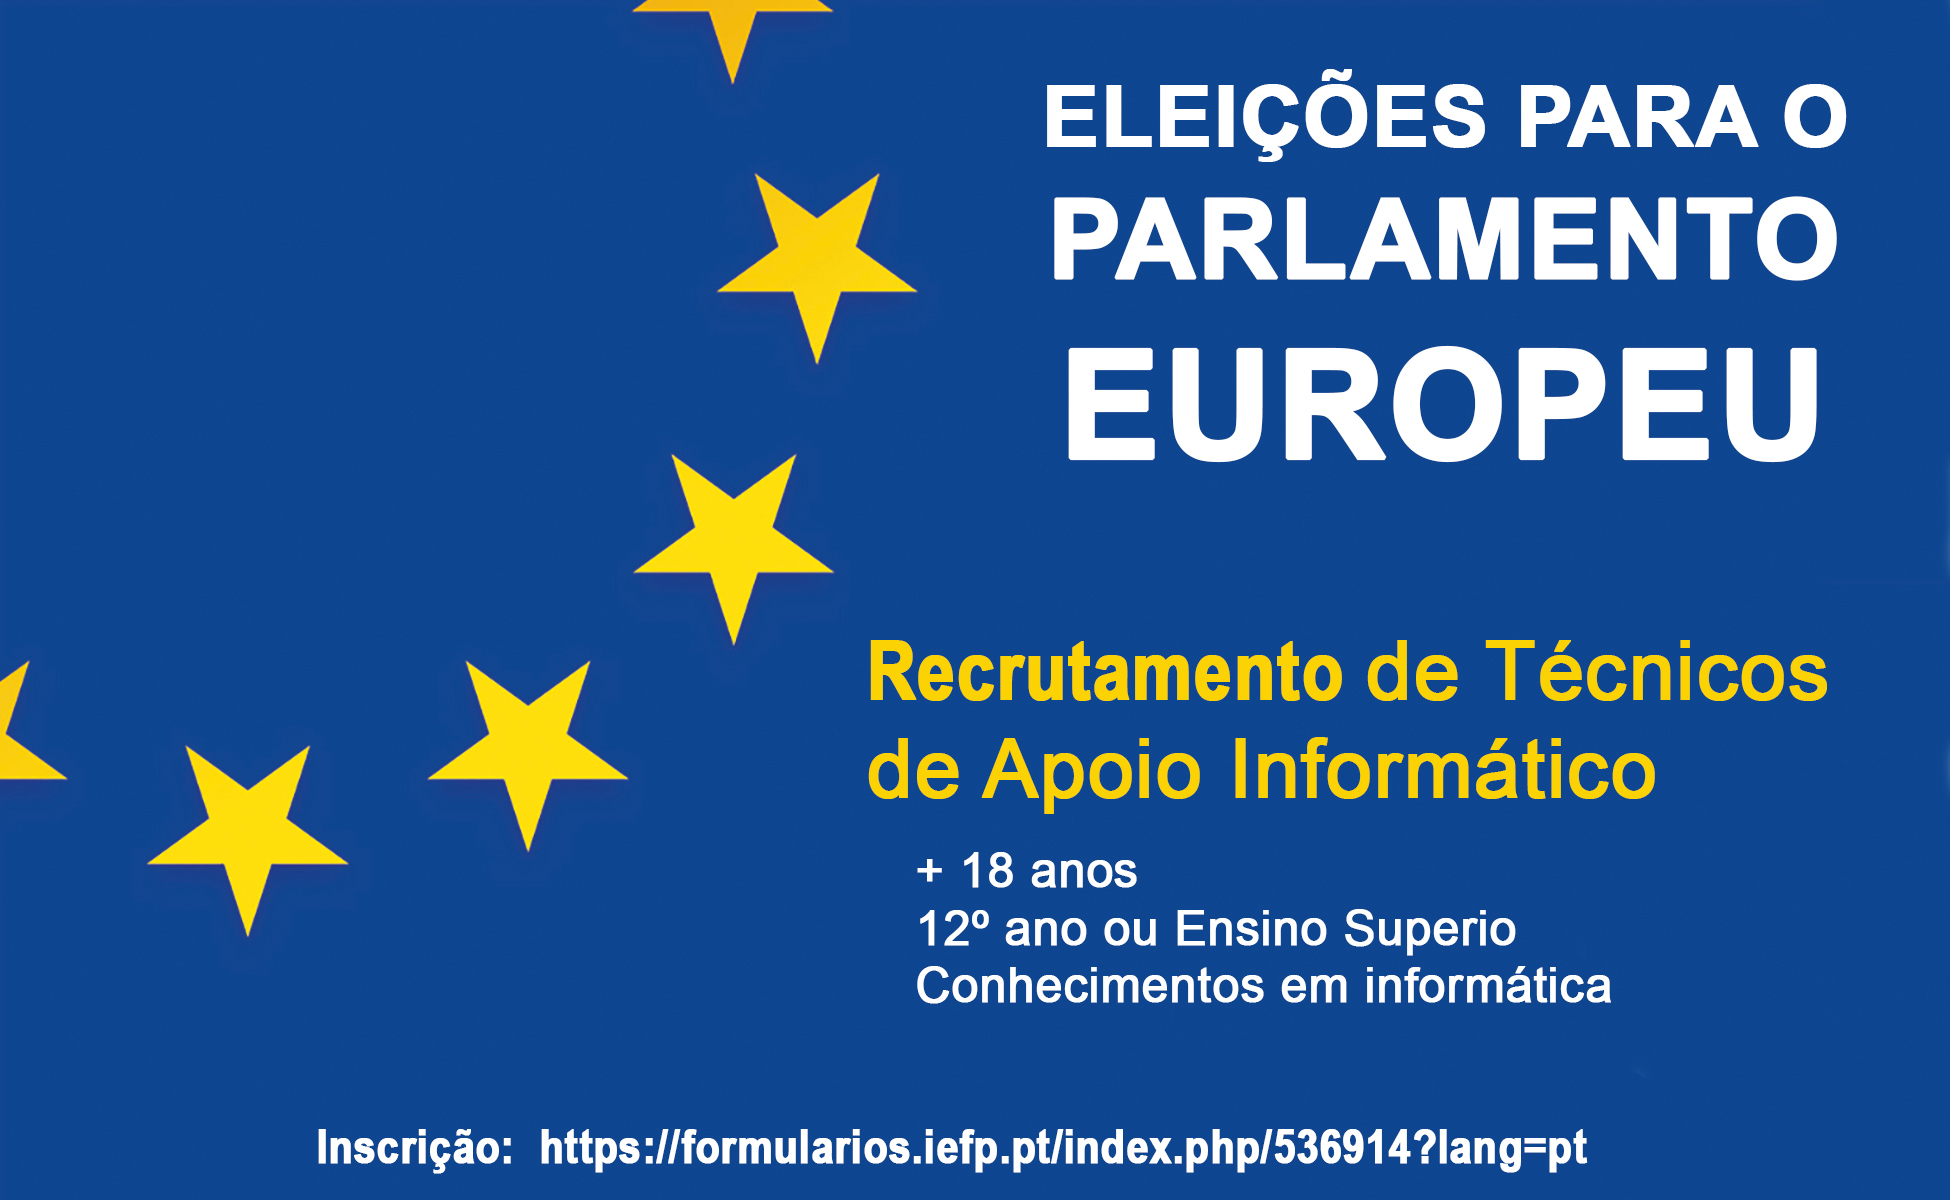 Recrutamento de Técnicos de Apoio Informático para as eleições europeias